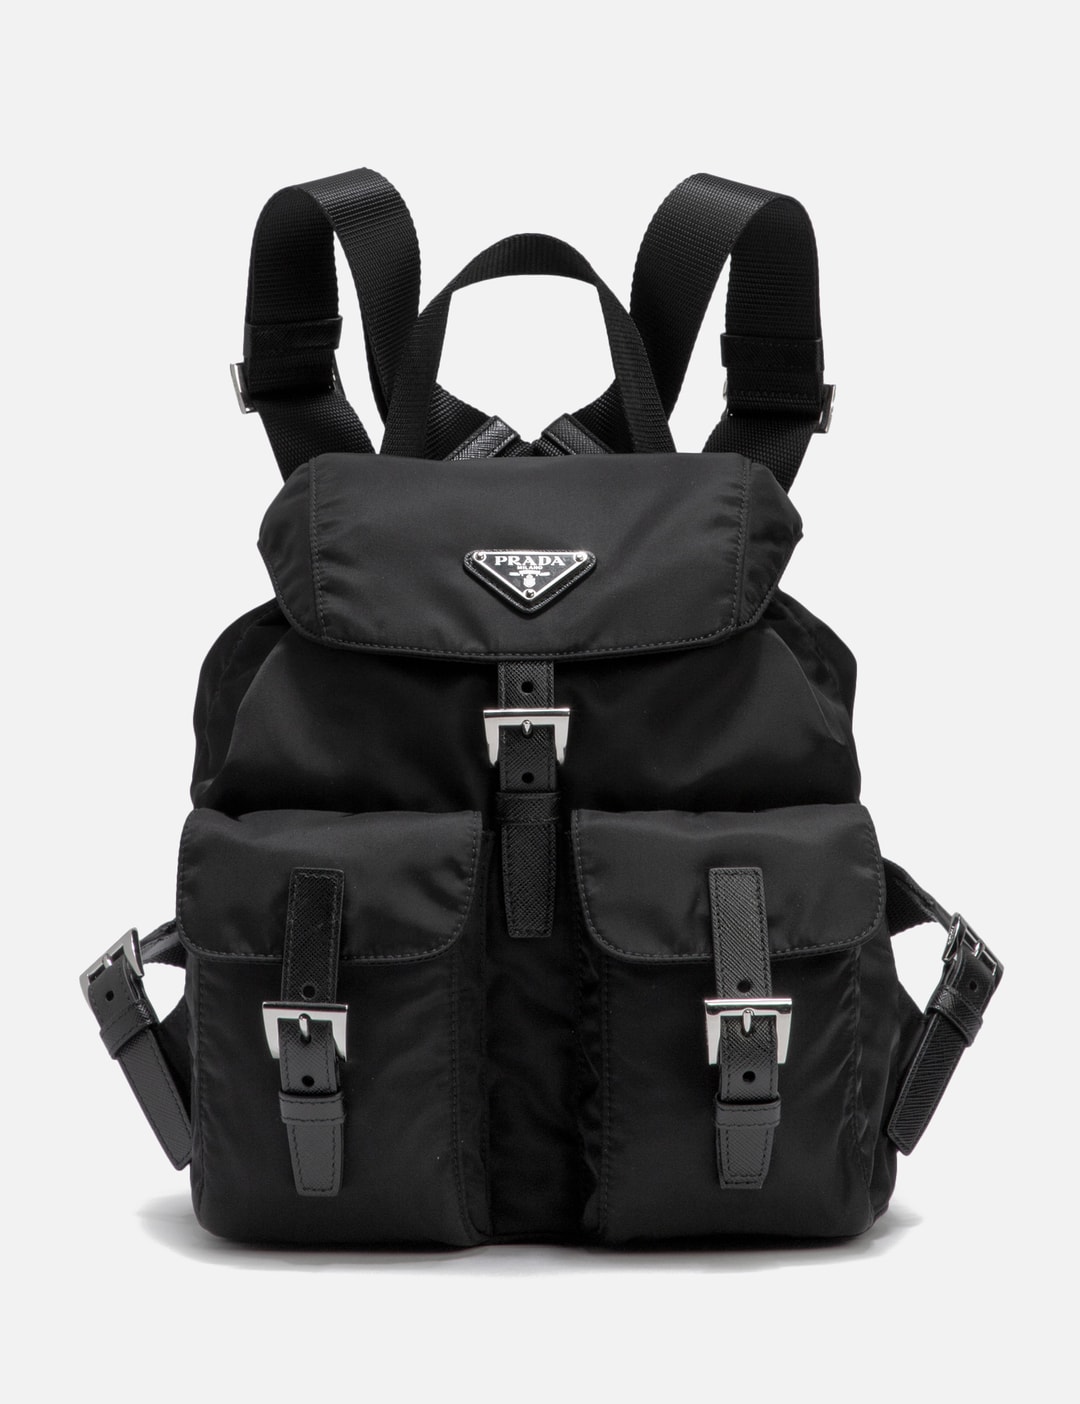 Mini Nylon Backpack in Black - Prada